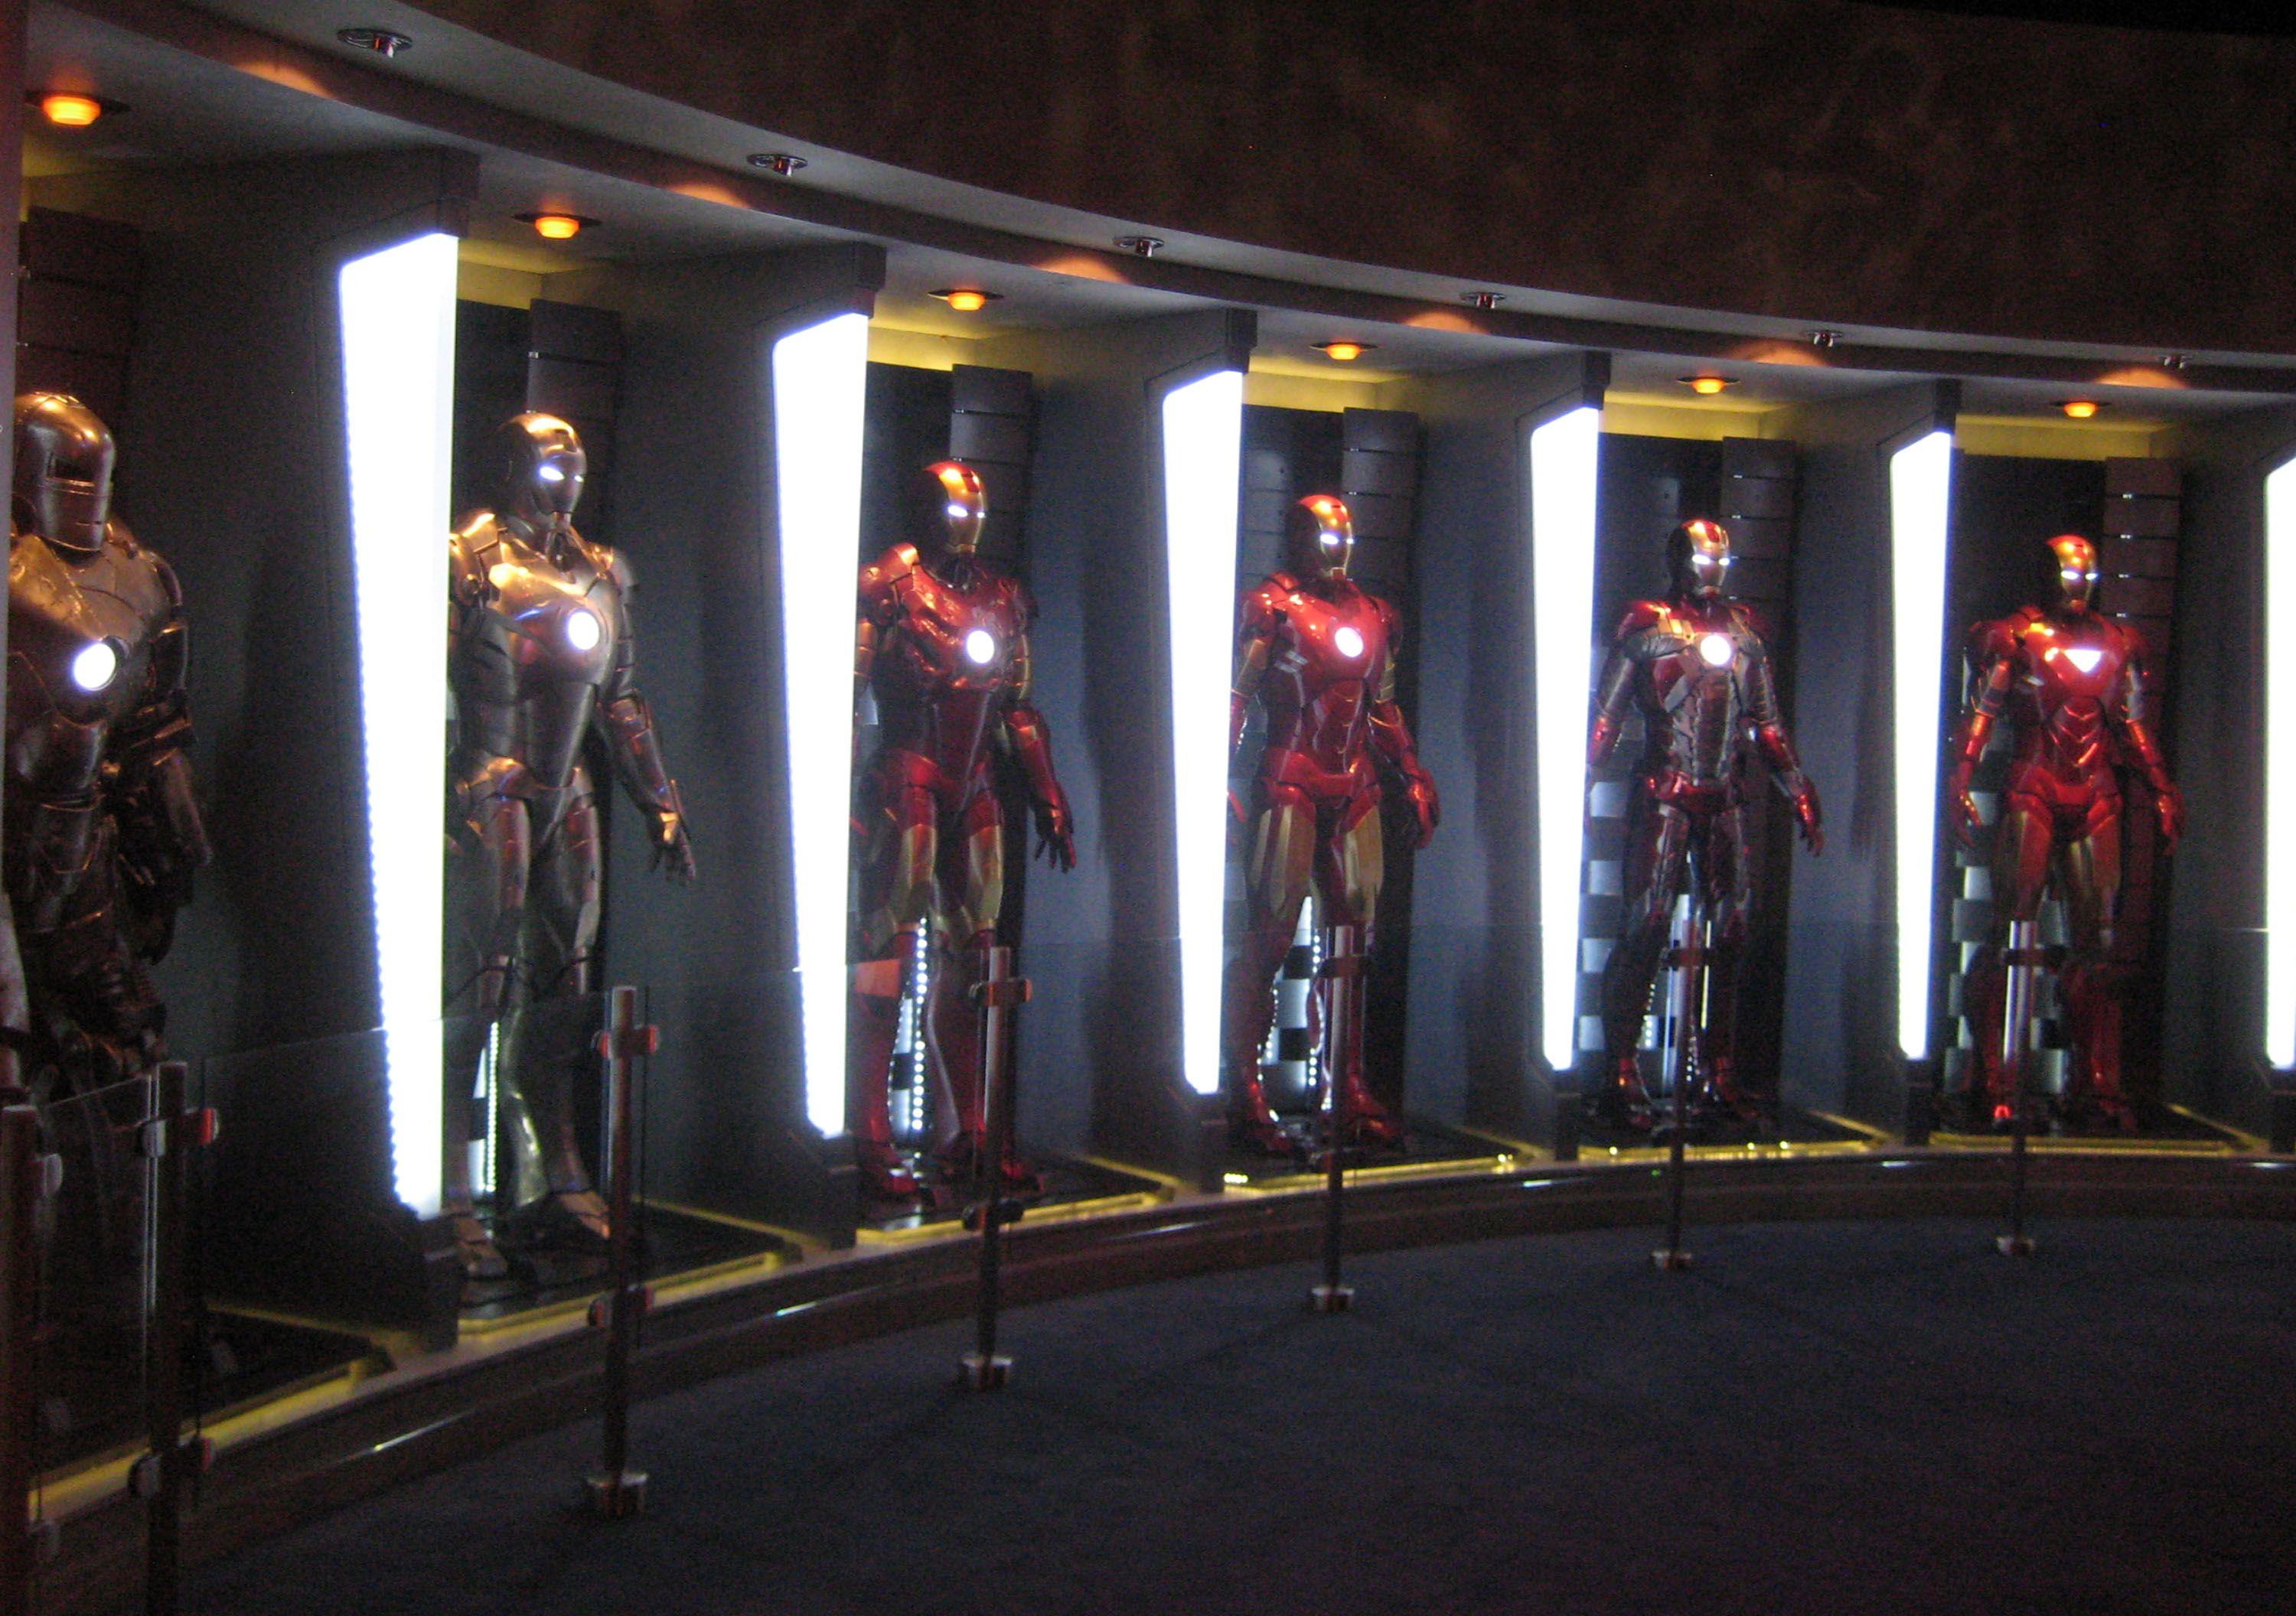 Disneyland Tony Stark's HALL OF ARMOR Exhibit Image